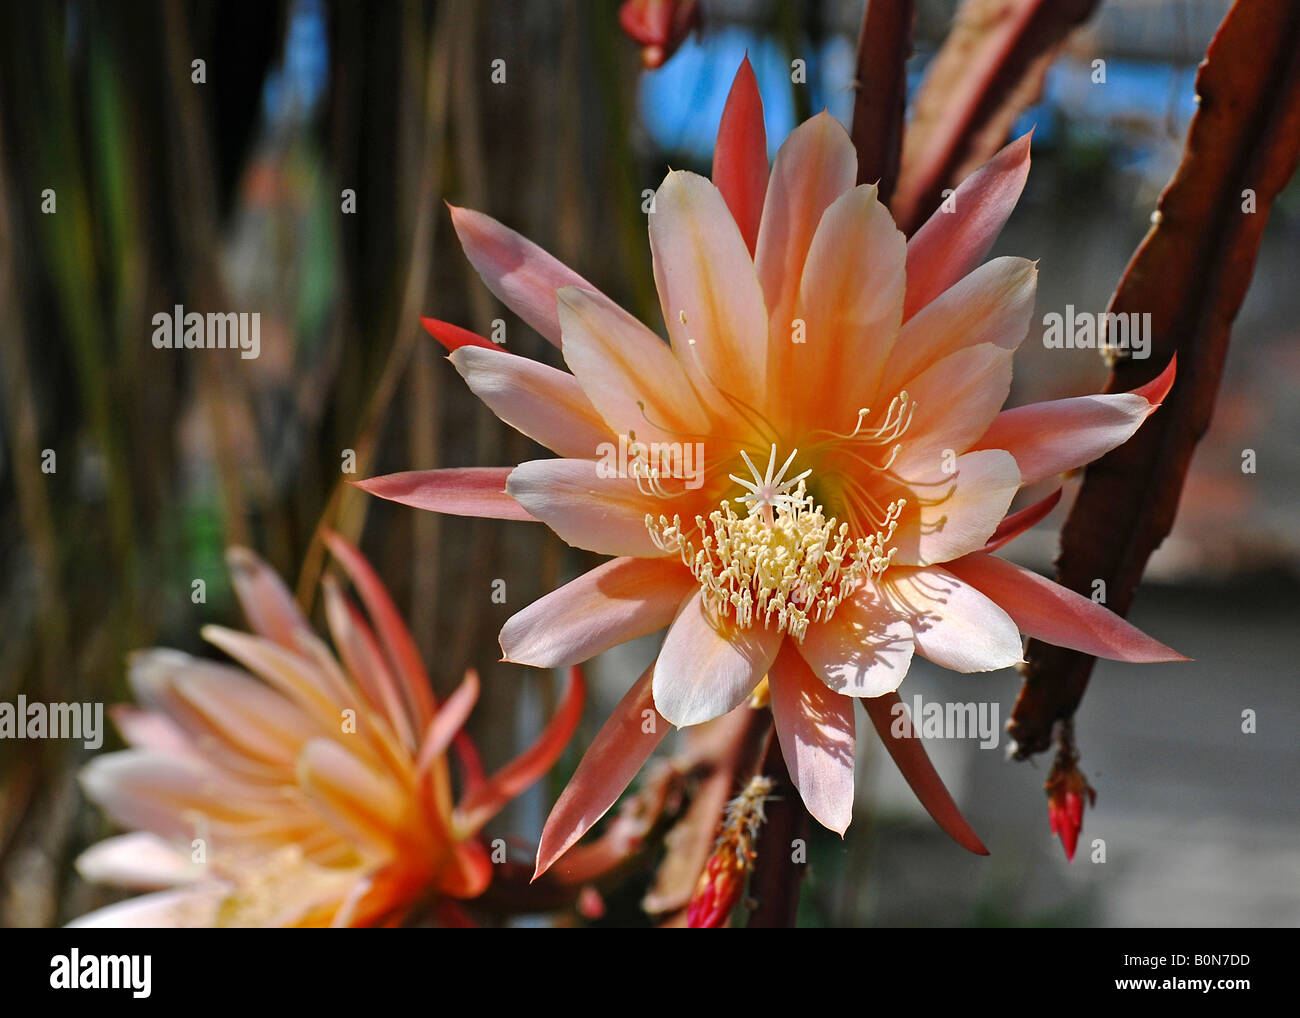 Epiphyllum hybrid, Botanical Gardens, Swansea, UK. Stock Photo